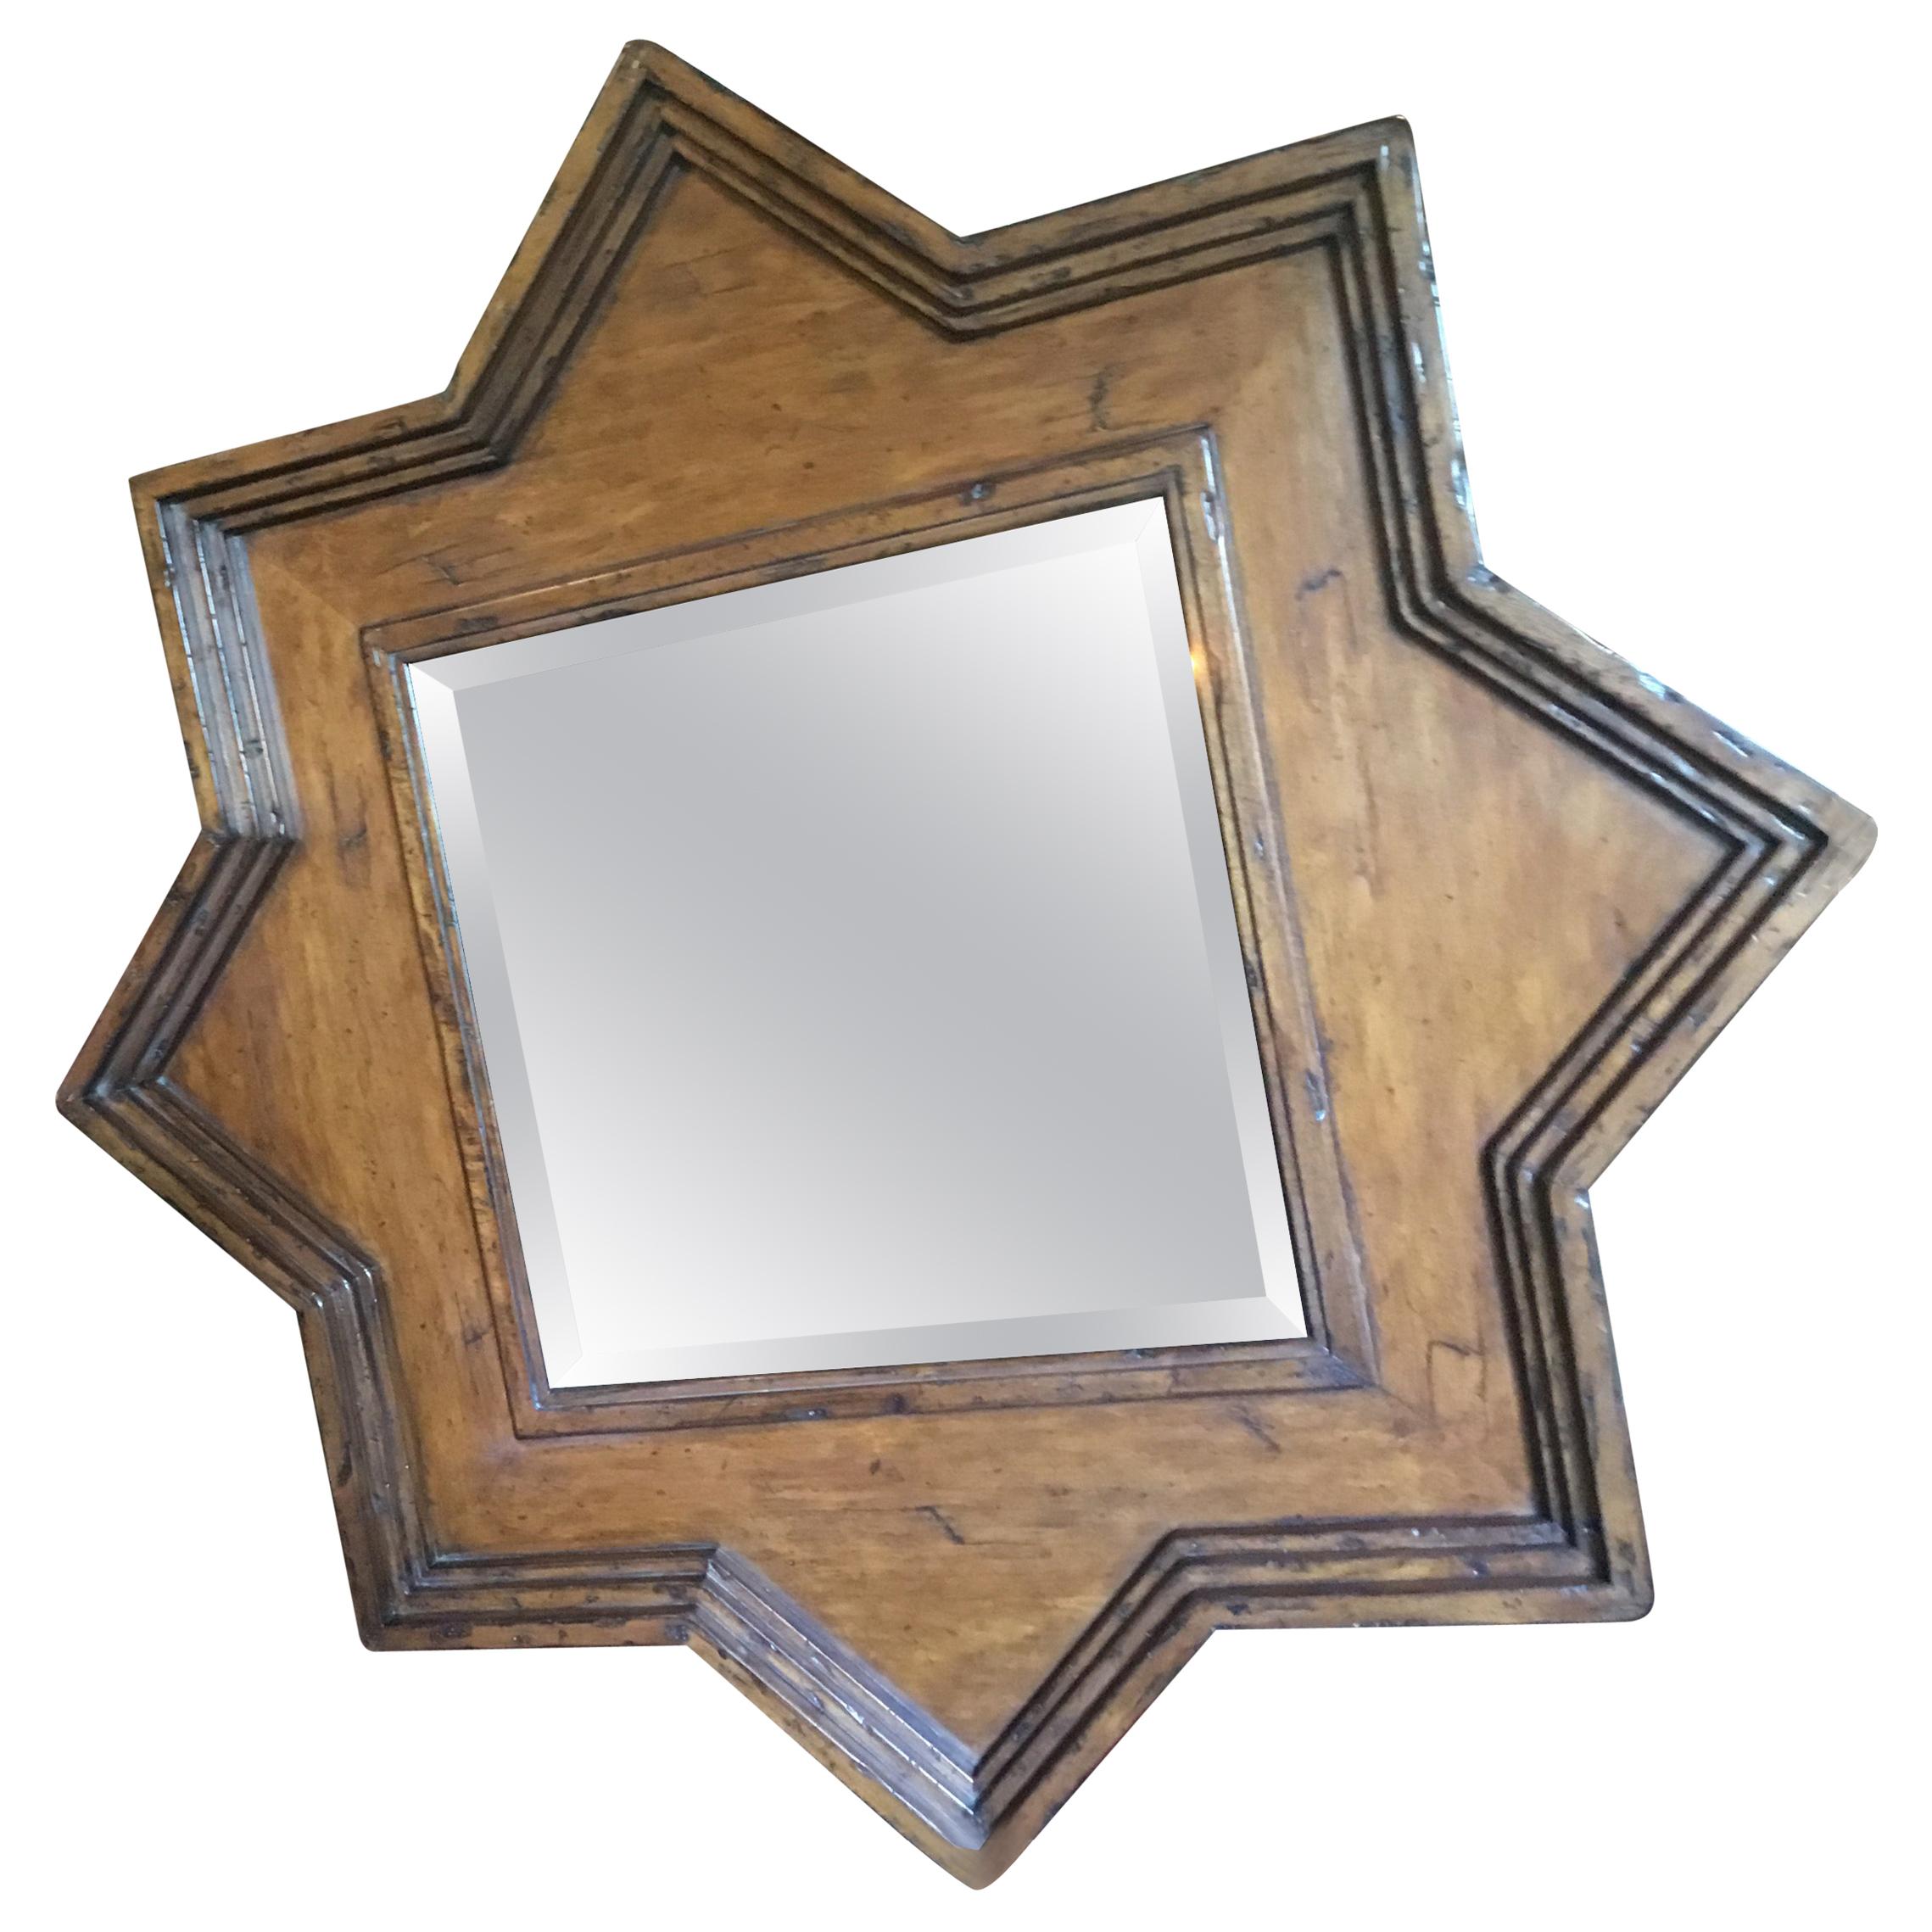 Cadre rustique en forme d'étoile avec miroir biseauté de forme carrée